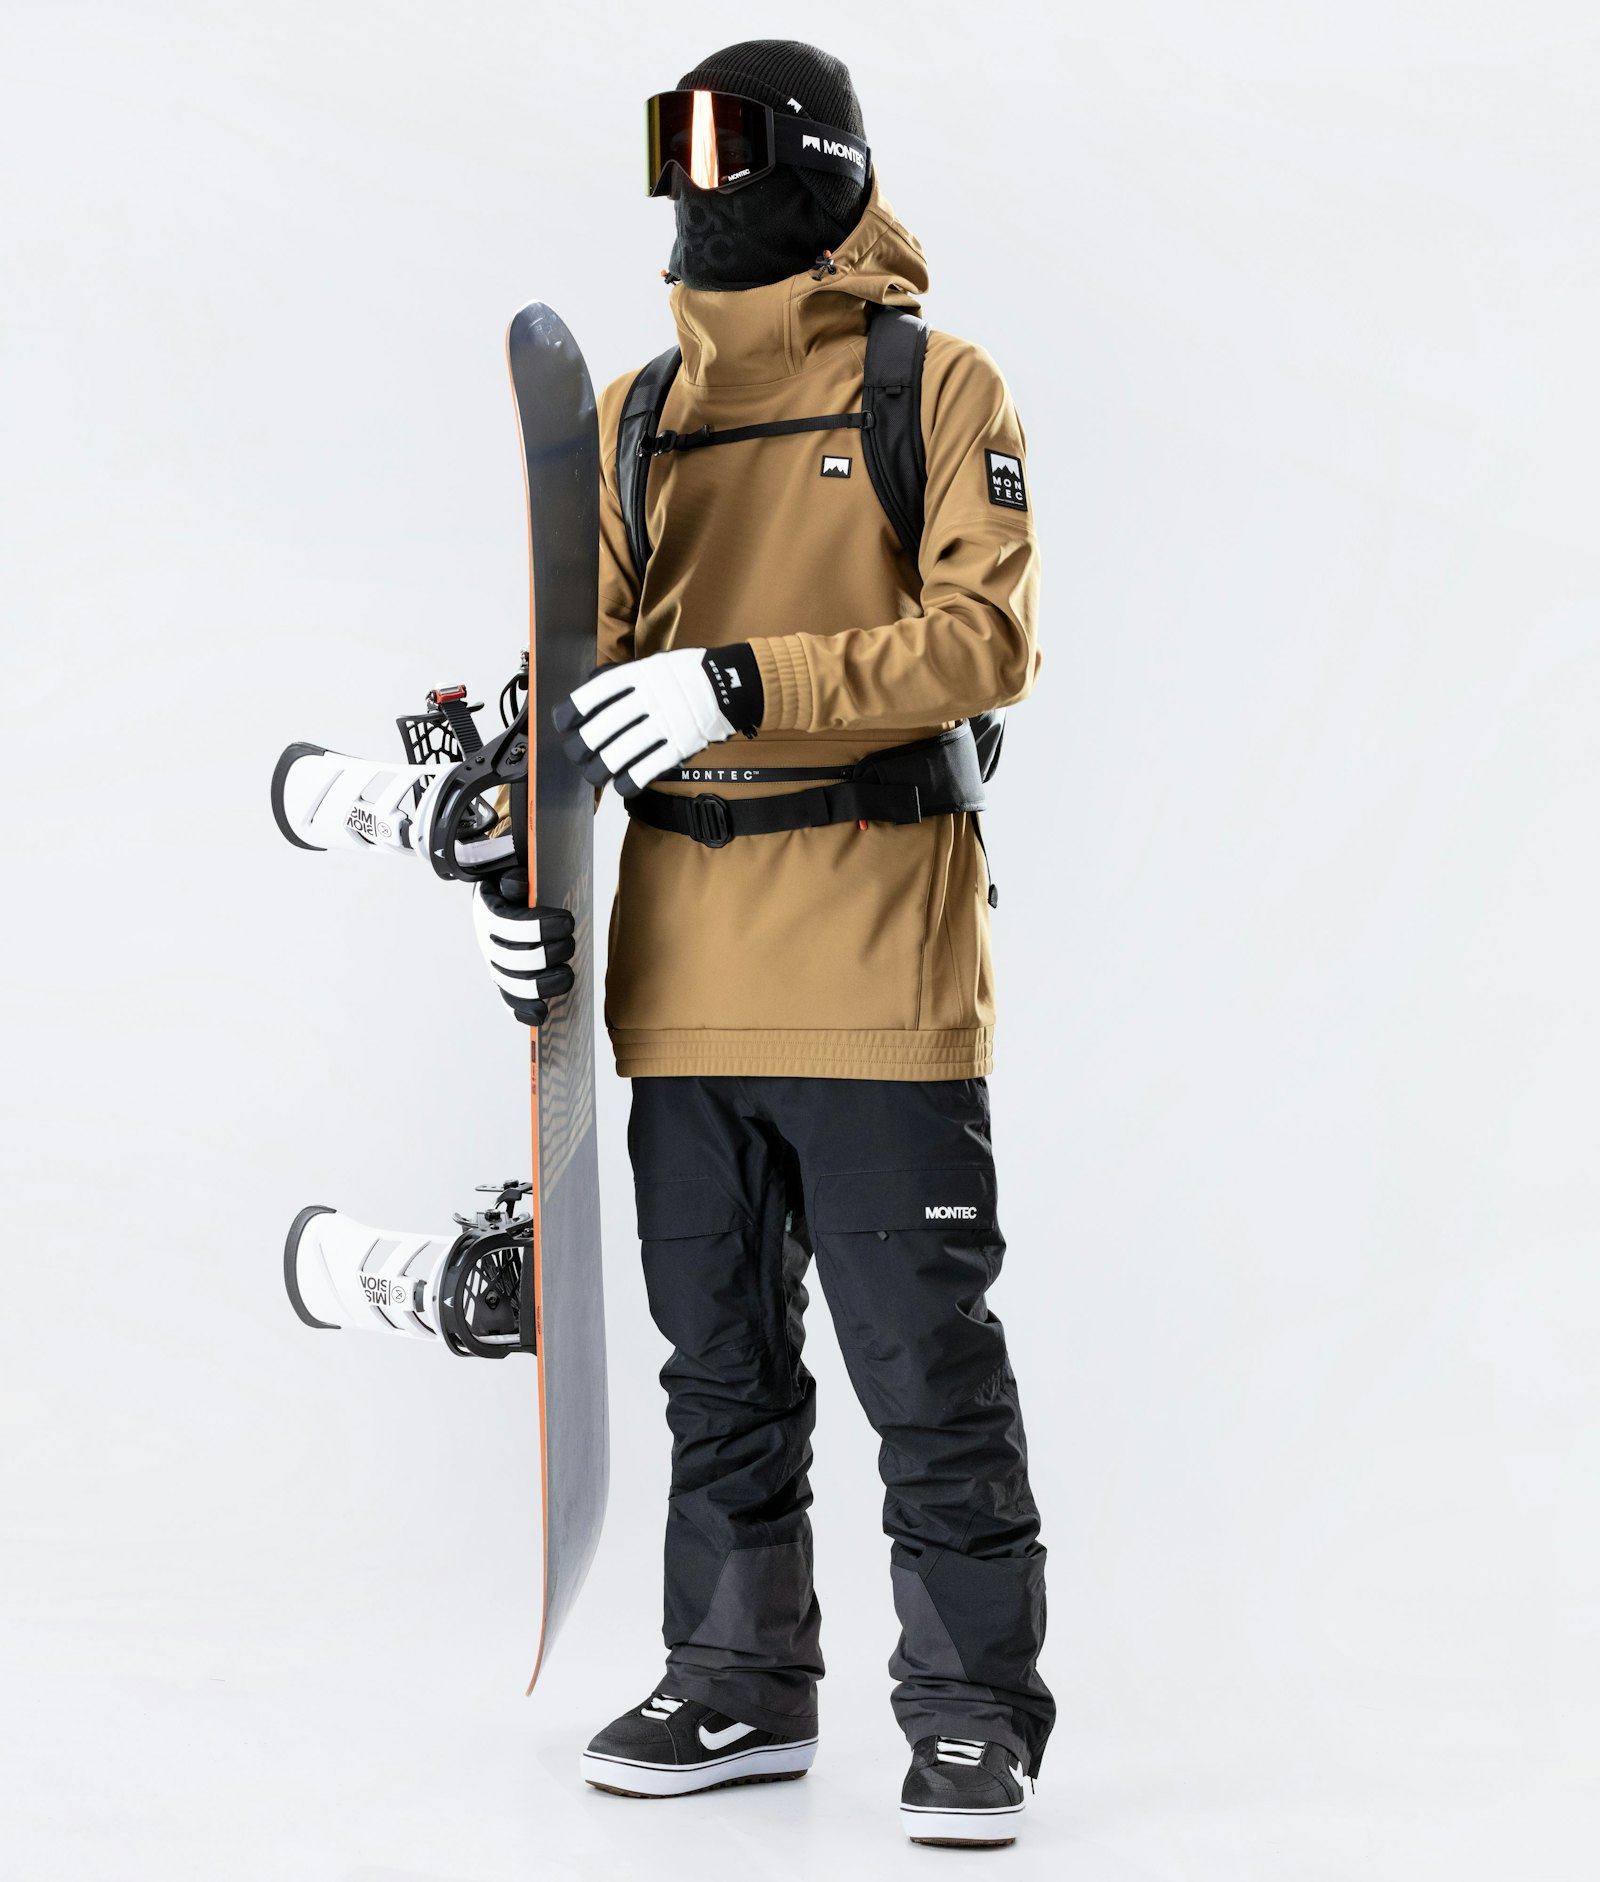 Tempest 2020 Veste Snowboard Homme Gold